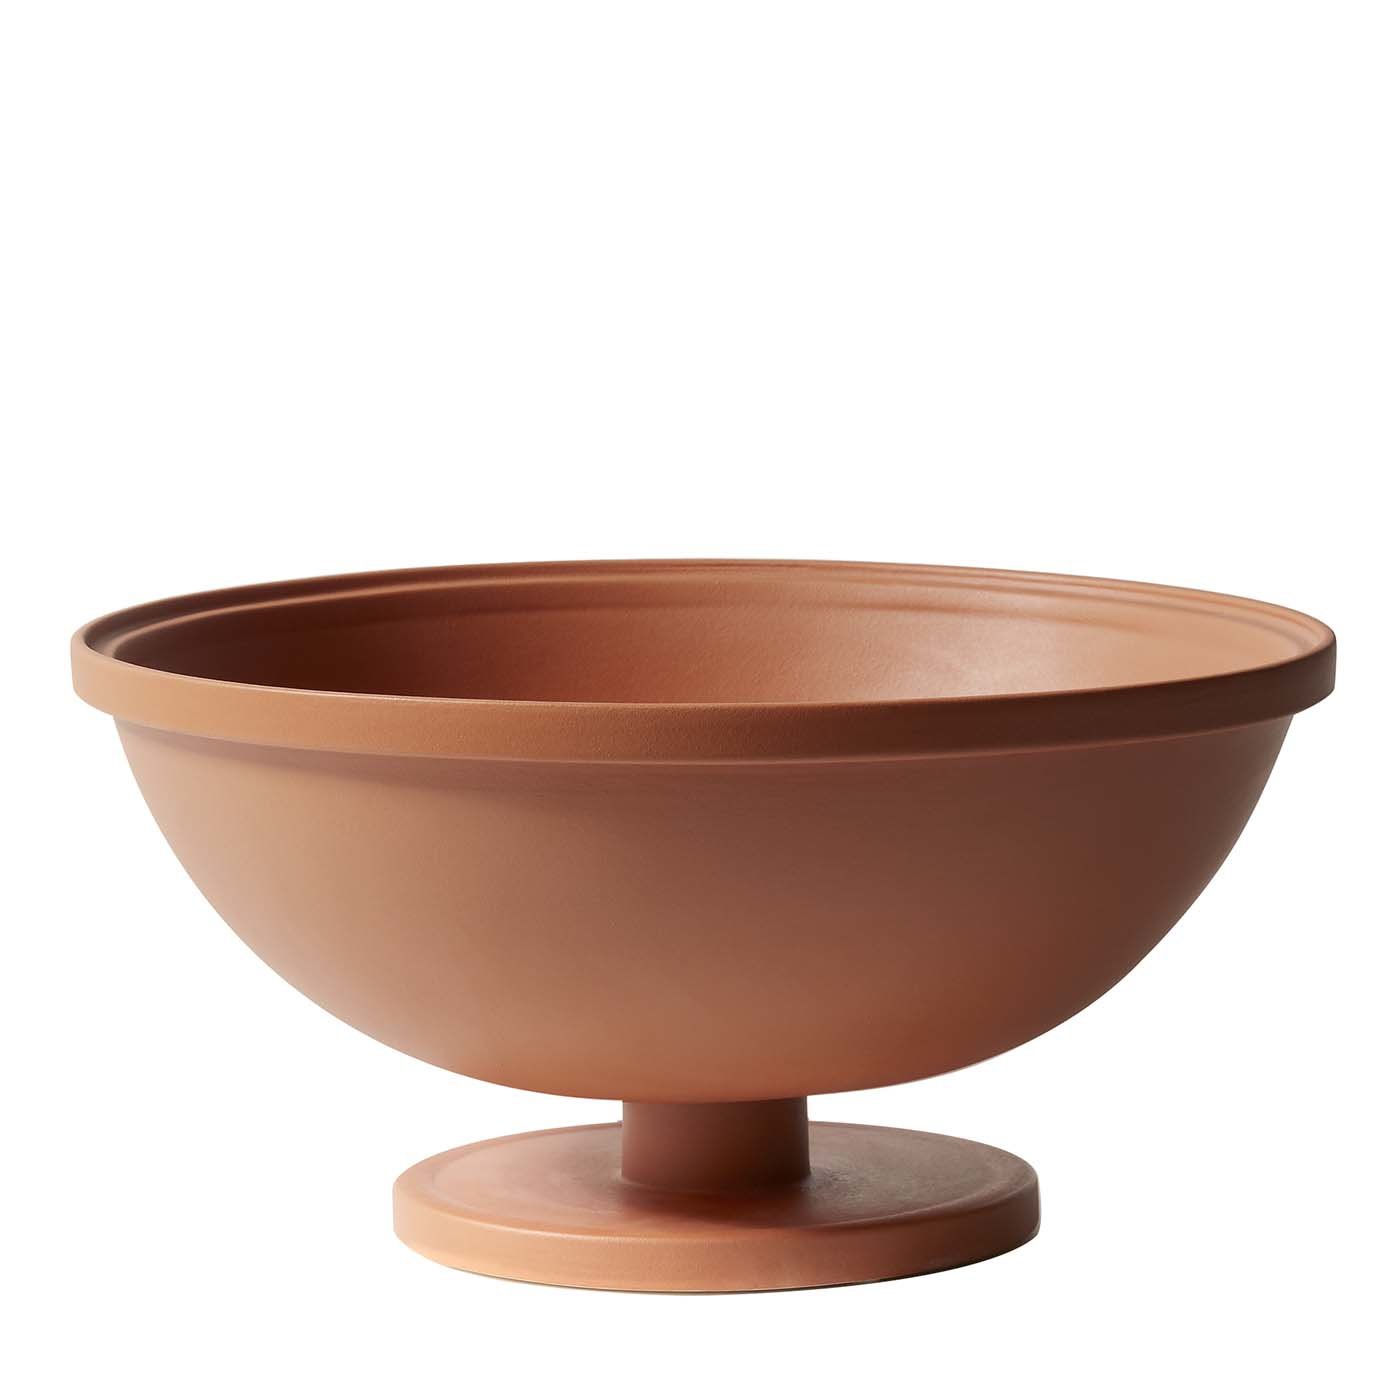 Copa grande de cerámica terracota Cuppone de Aldo Cibic - Vista principal